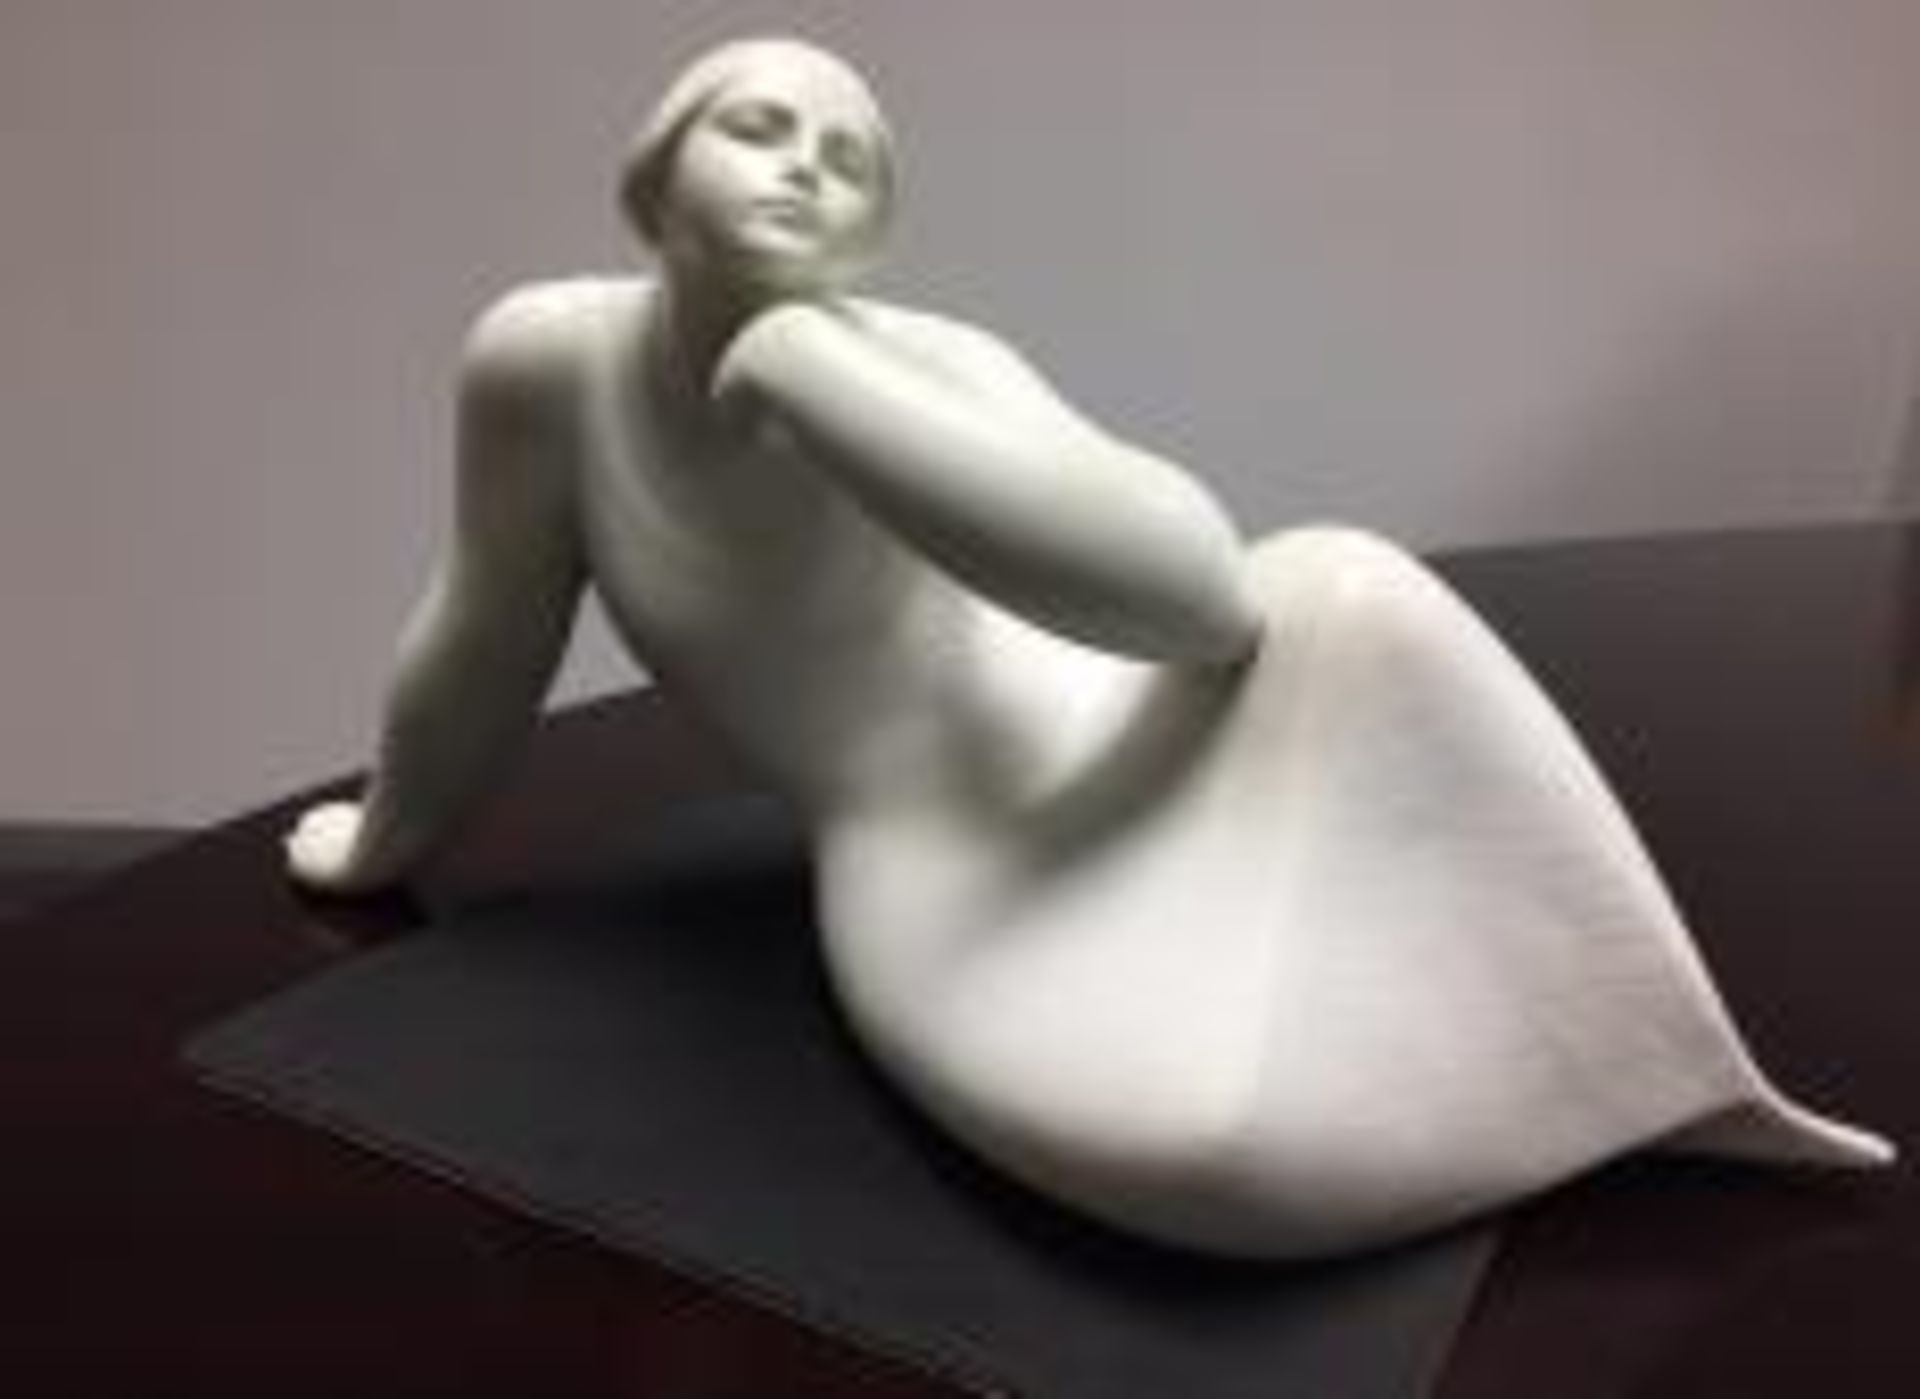 2003 Lladro "Idea" sculpture by Jose Luis Santes - 19cm x 28cm